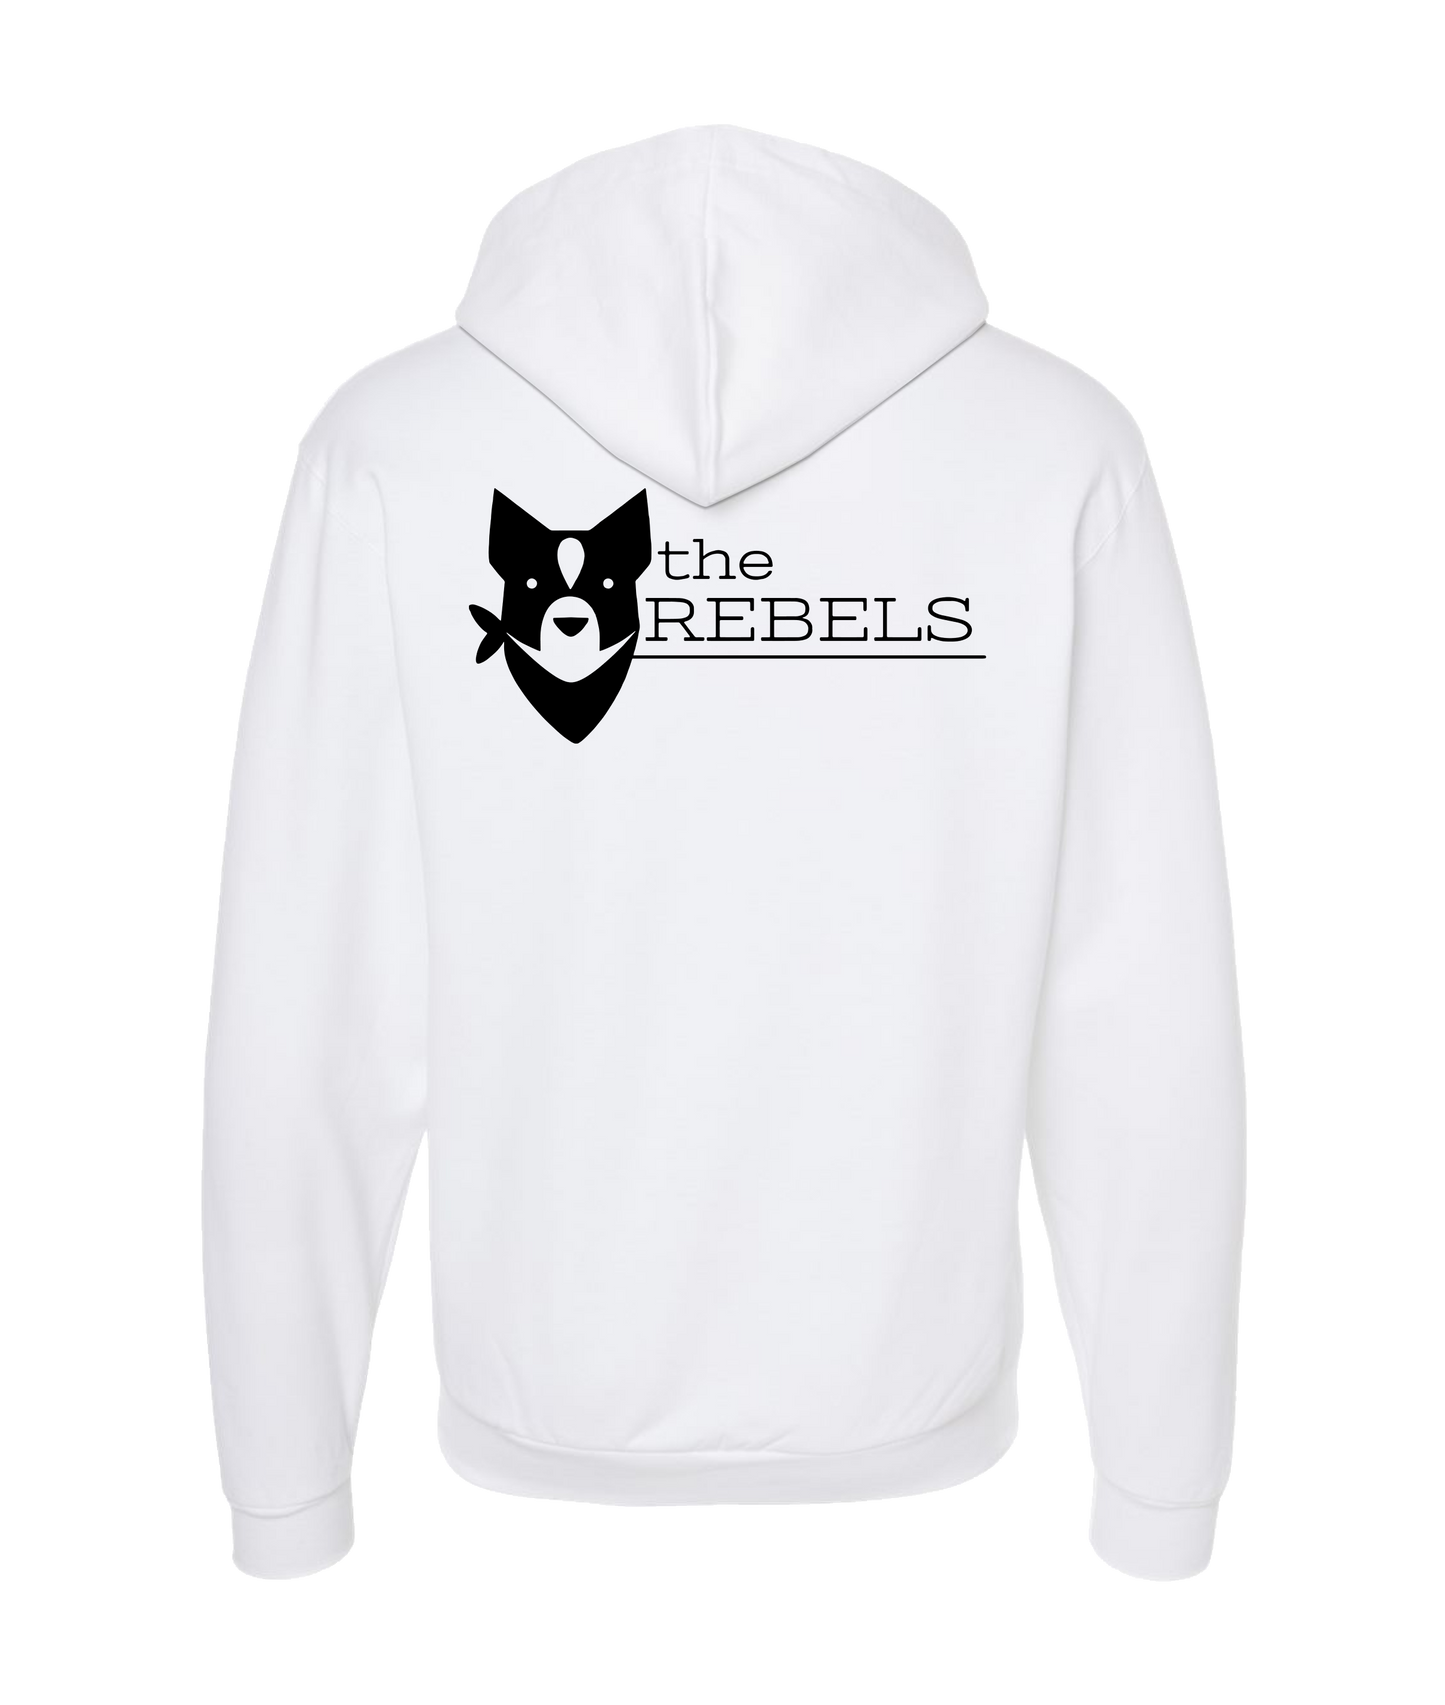 Zeus Rebel Waters - the REBELS logo - White Zip Up Hoodie